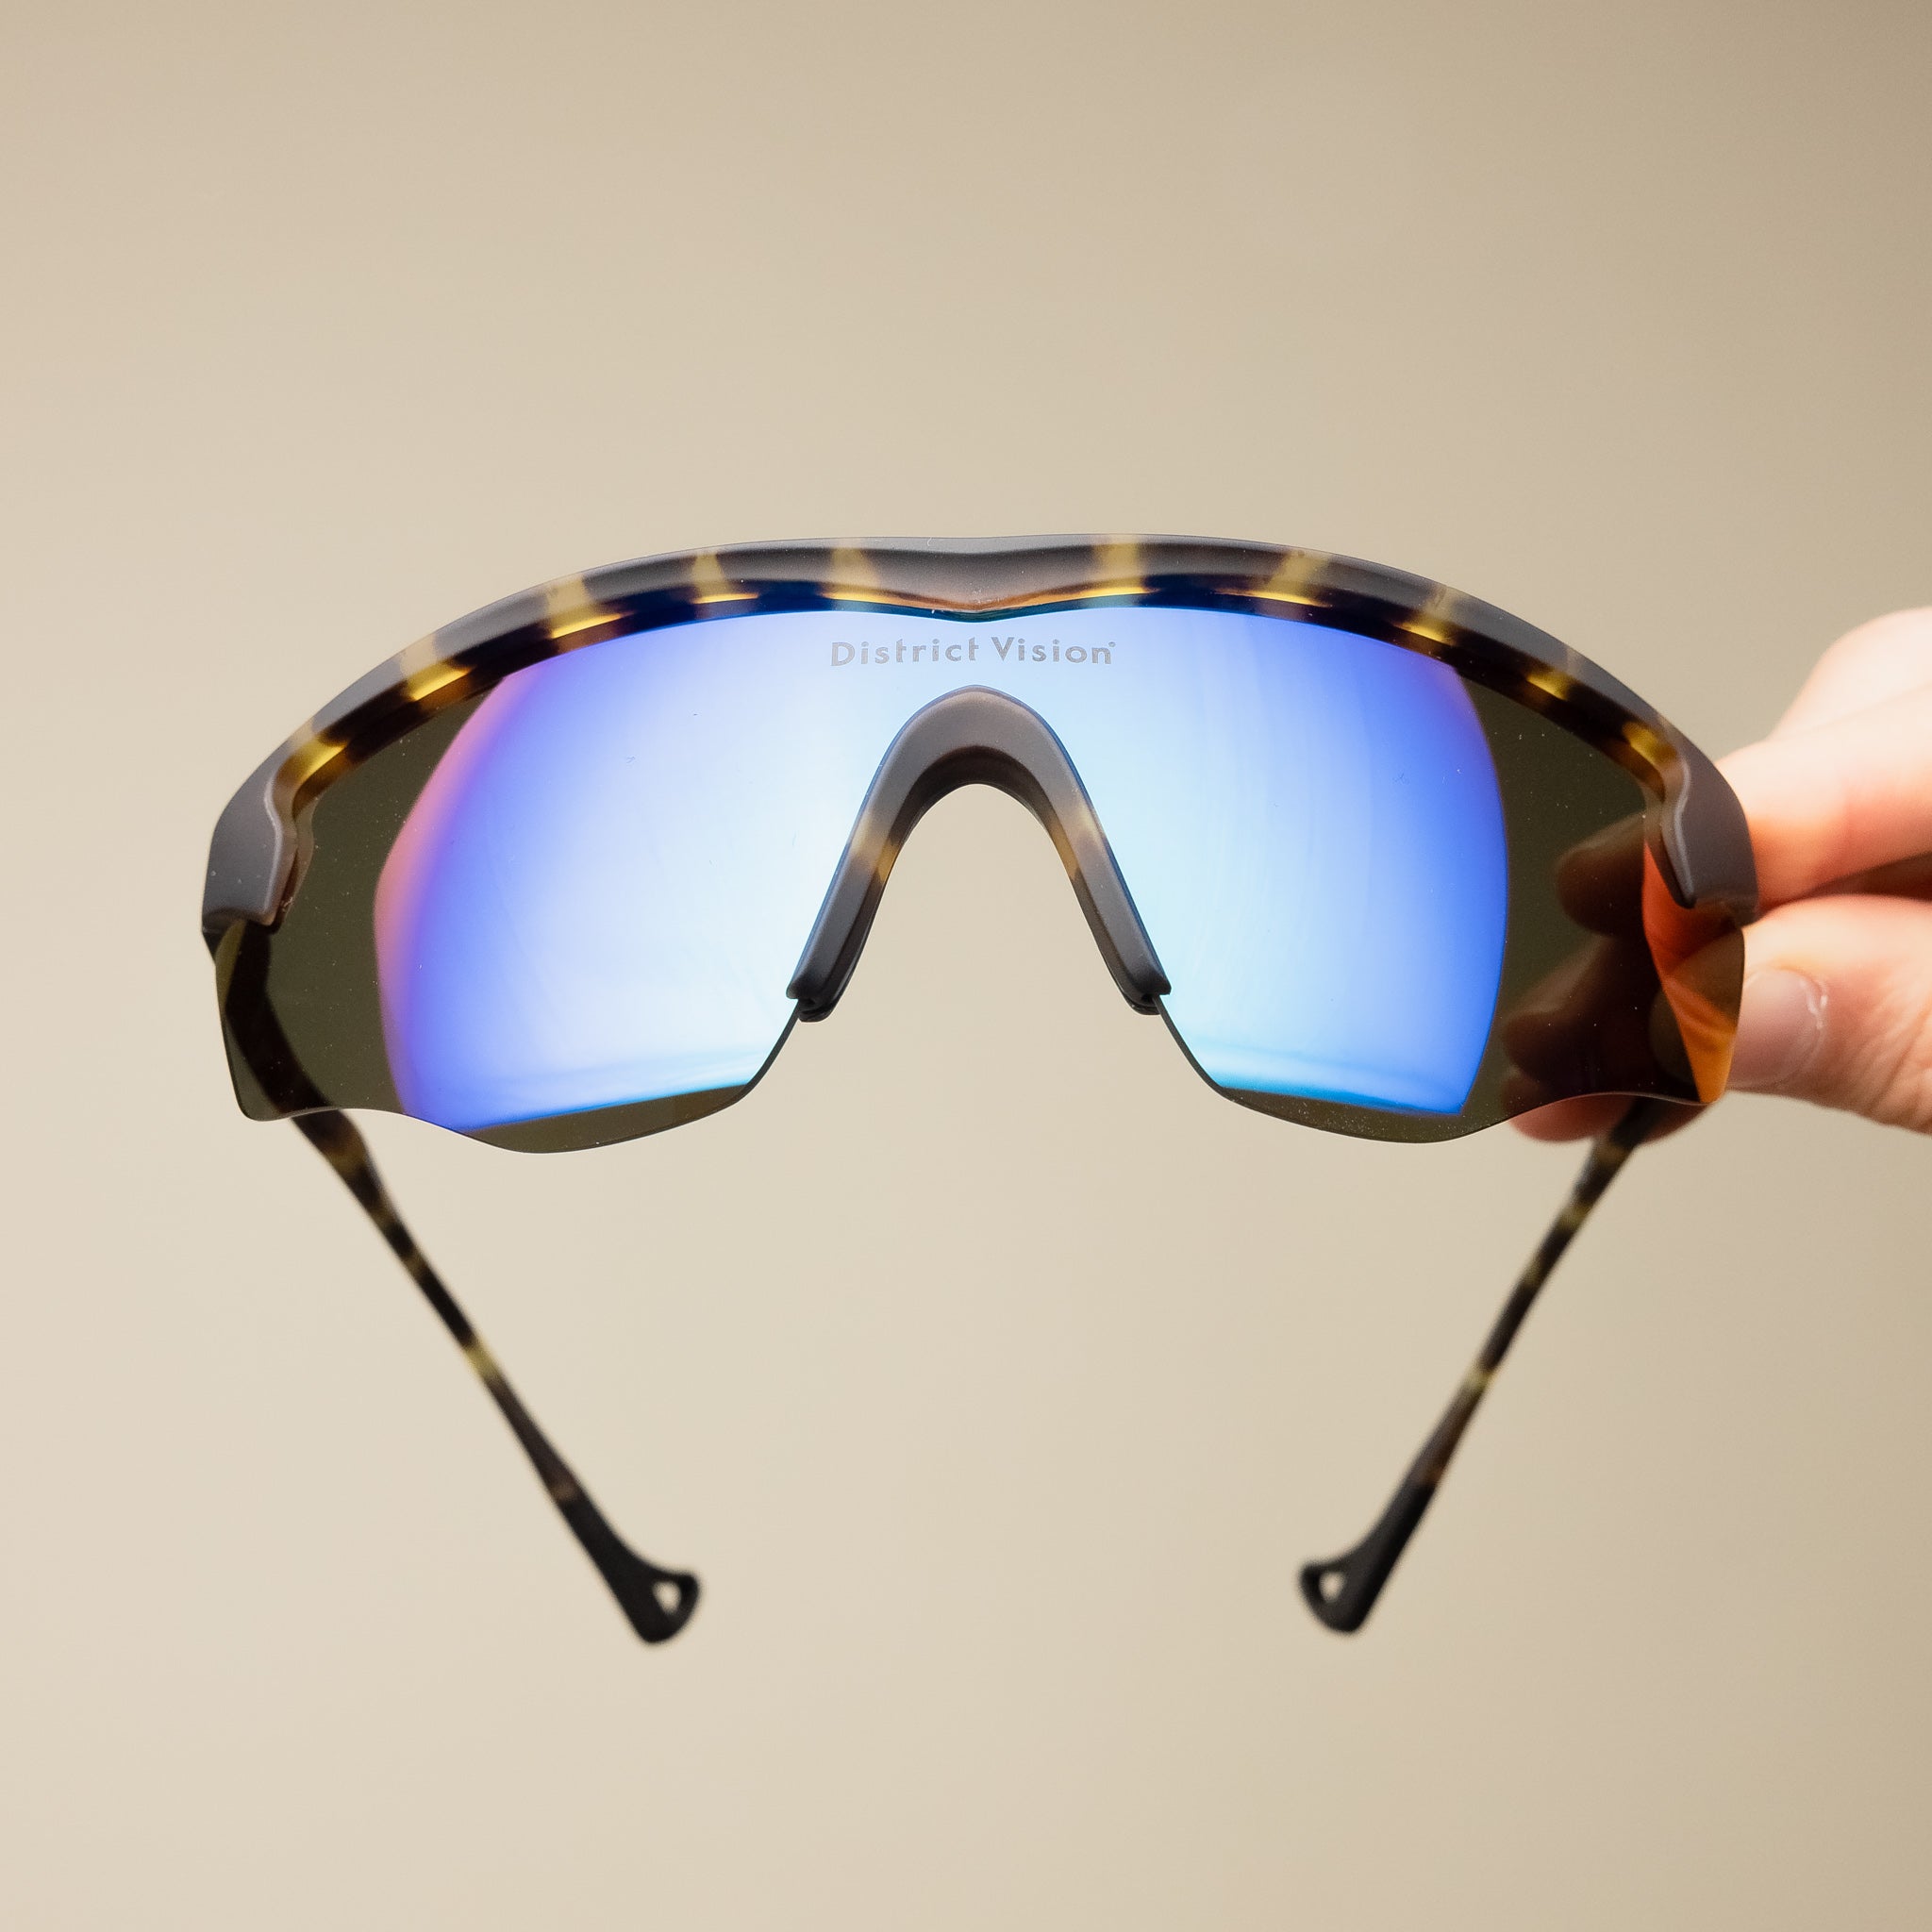 District Vision - Junya Racer - Tortoise D+ Blue Mirror "district vision sunglasses" "District vision stockists"